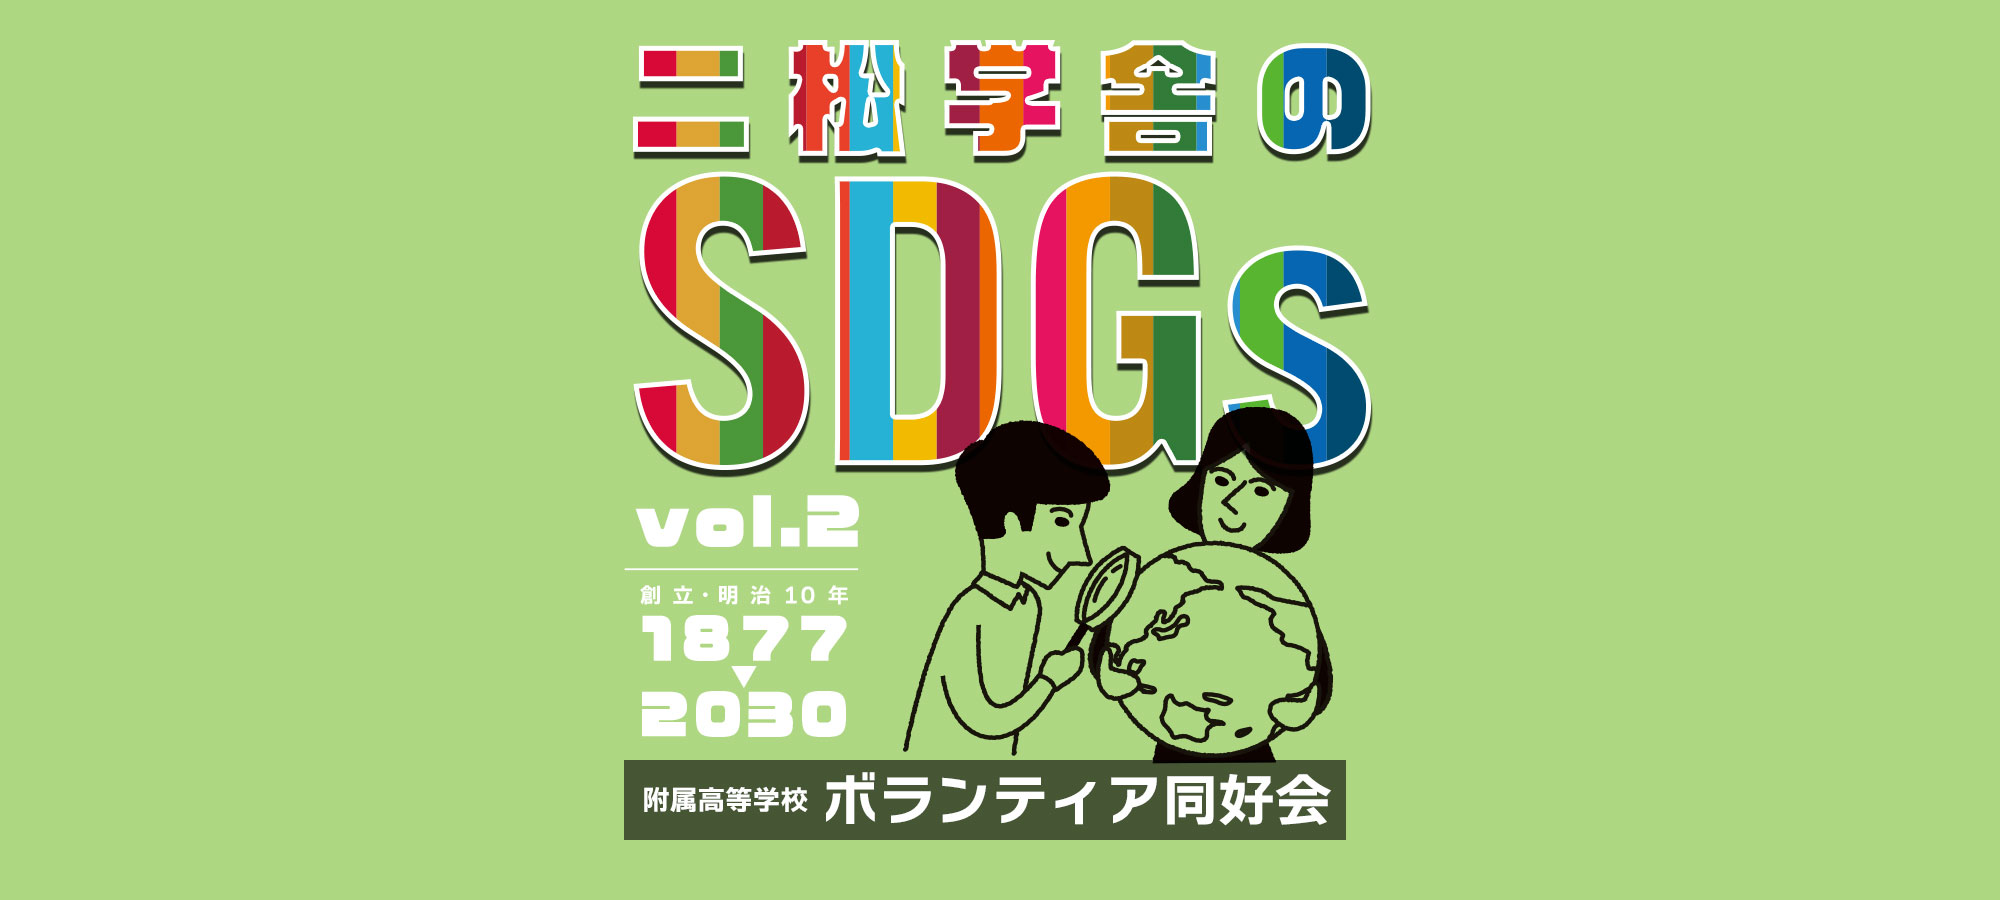 二松学舎のSDGs vol.2「ボランティア同好会」